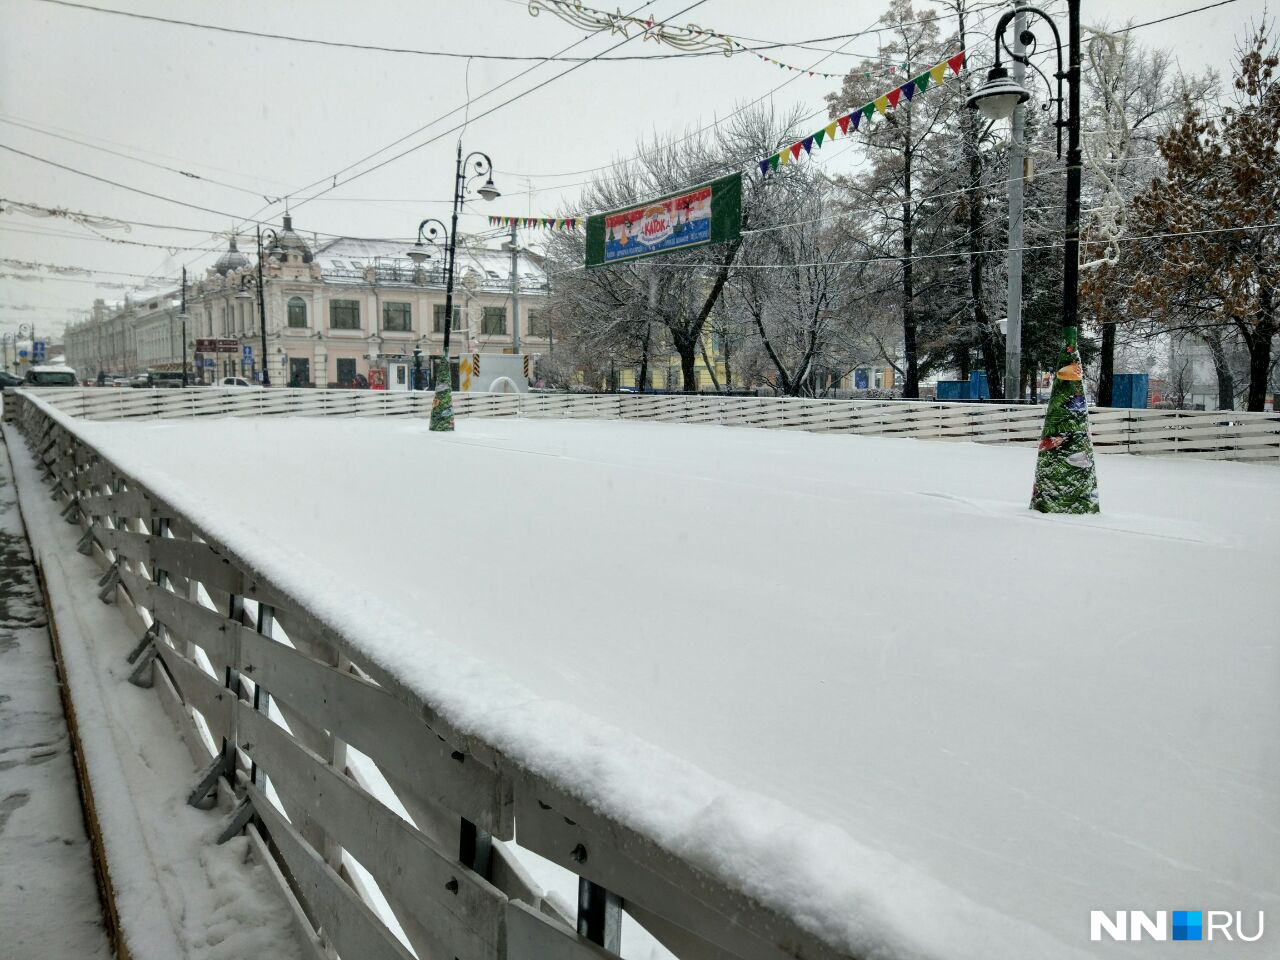 Утро 18 декабря. Каток, не зависящий от погоды, замело снегом